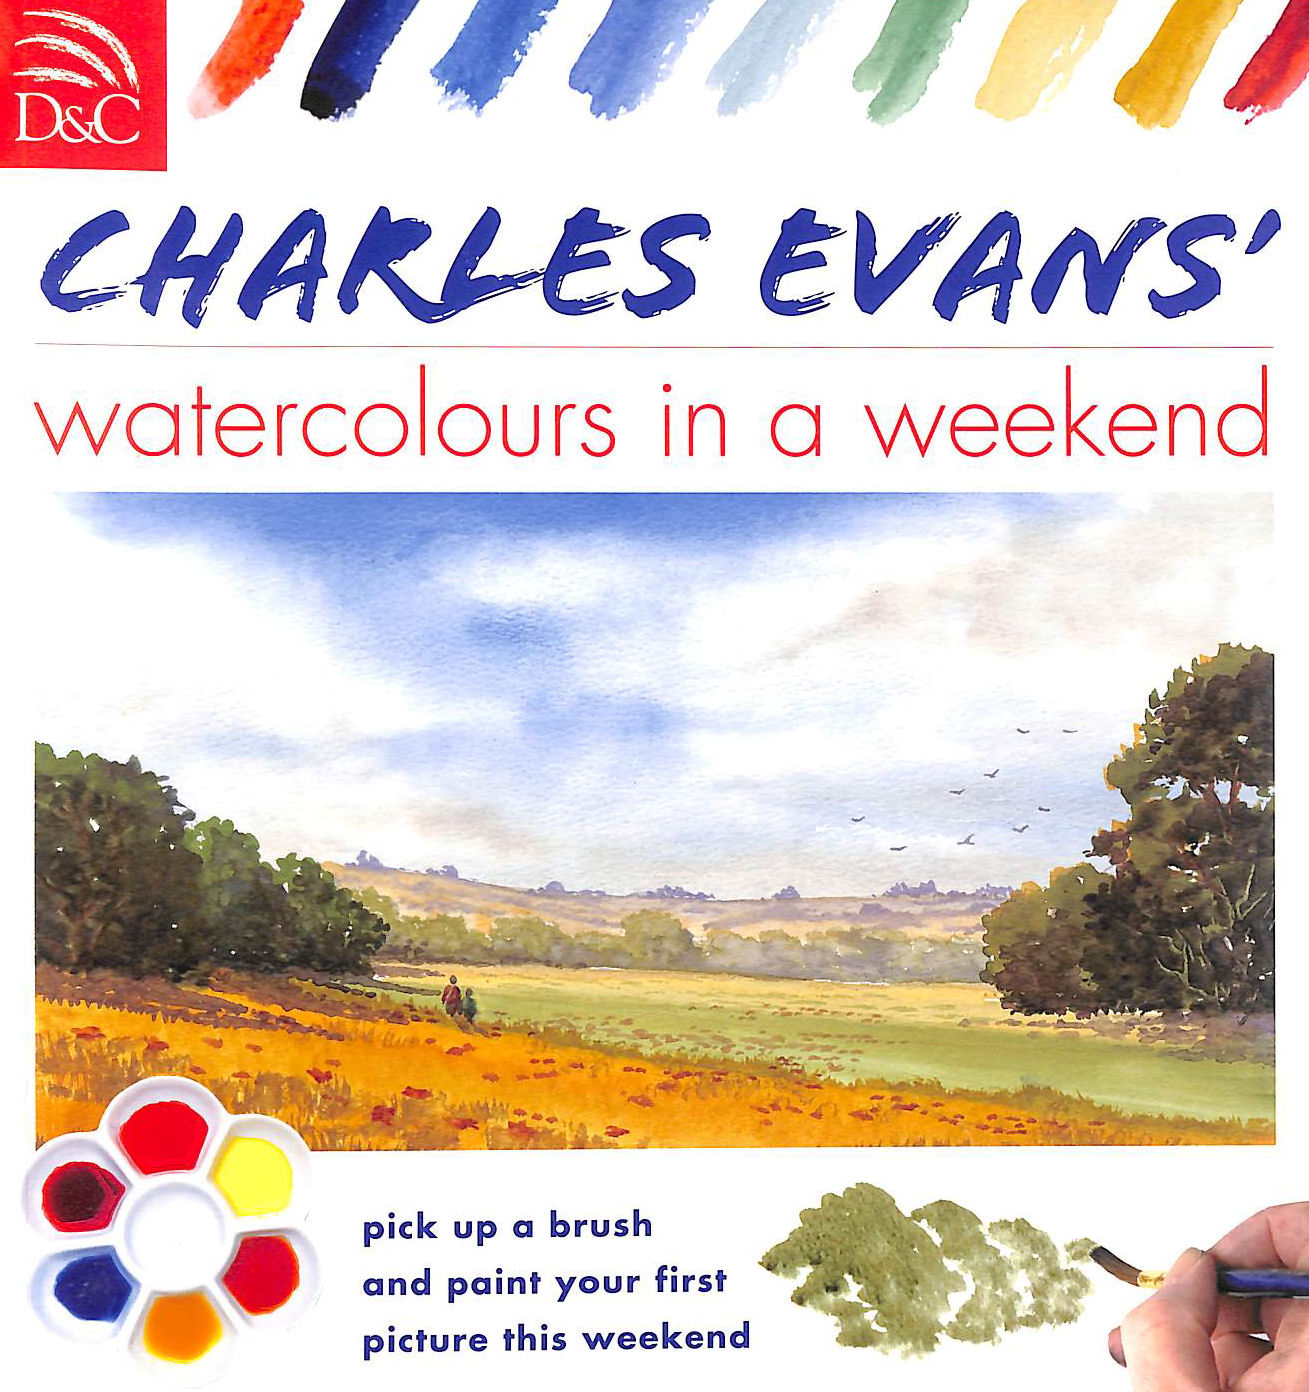 EVANS, CHARLES - Charles Evans Watercolors in a Weekend